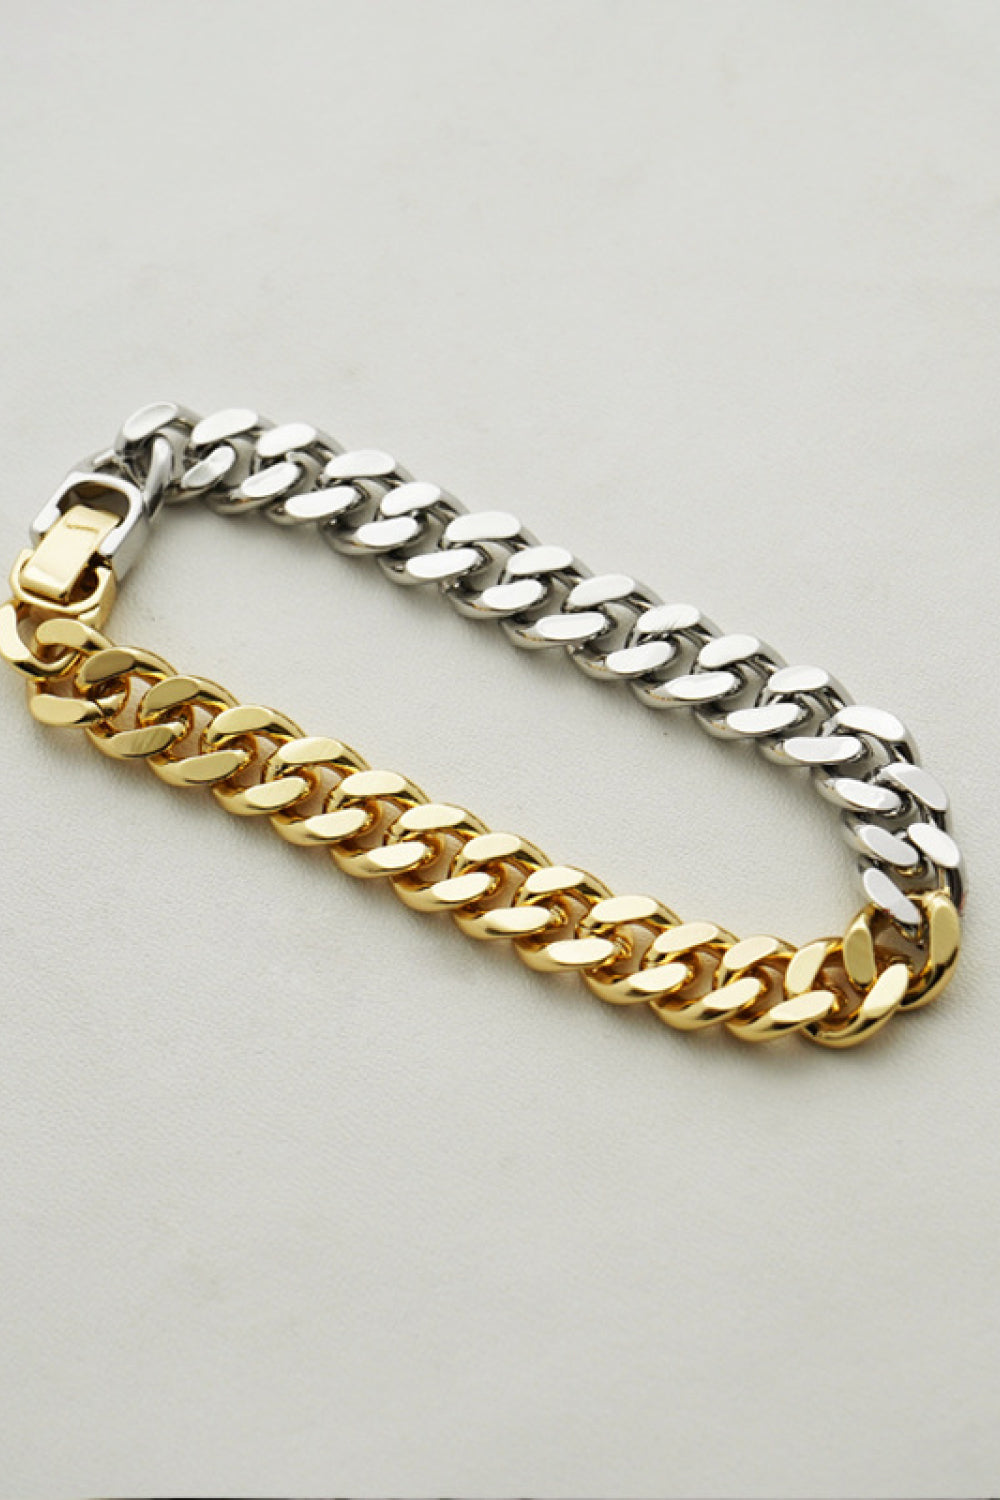 Two-Tone Chunky Chain Bracelet - Body By J'ne